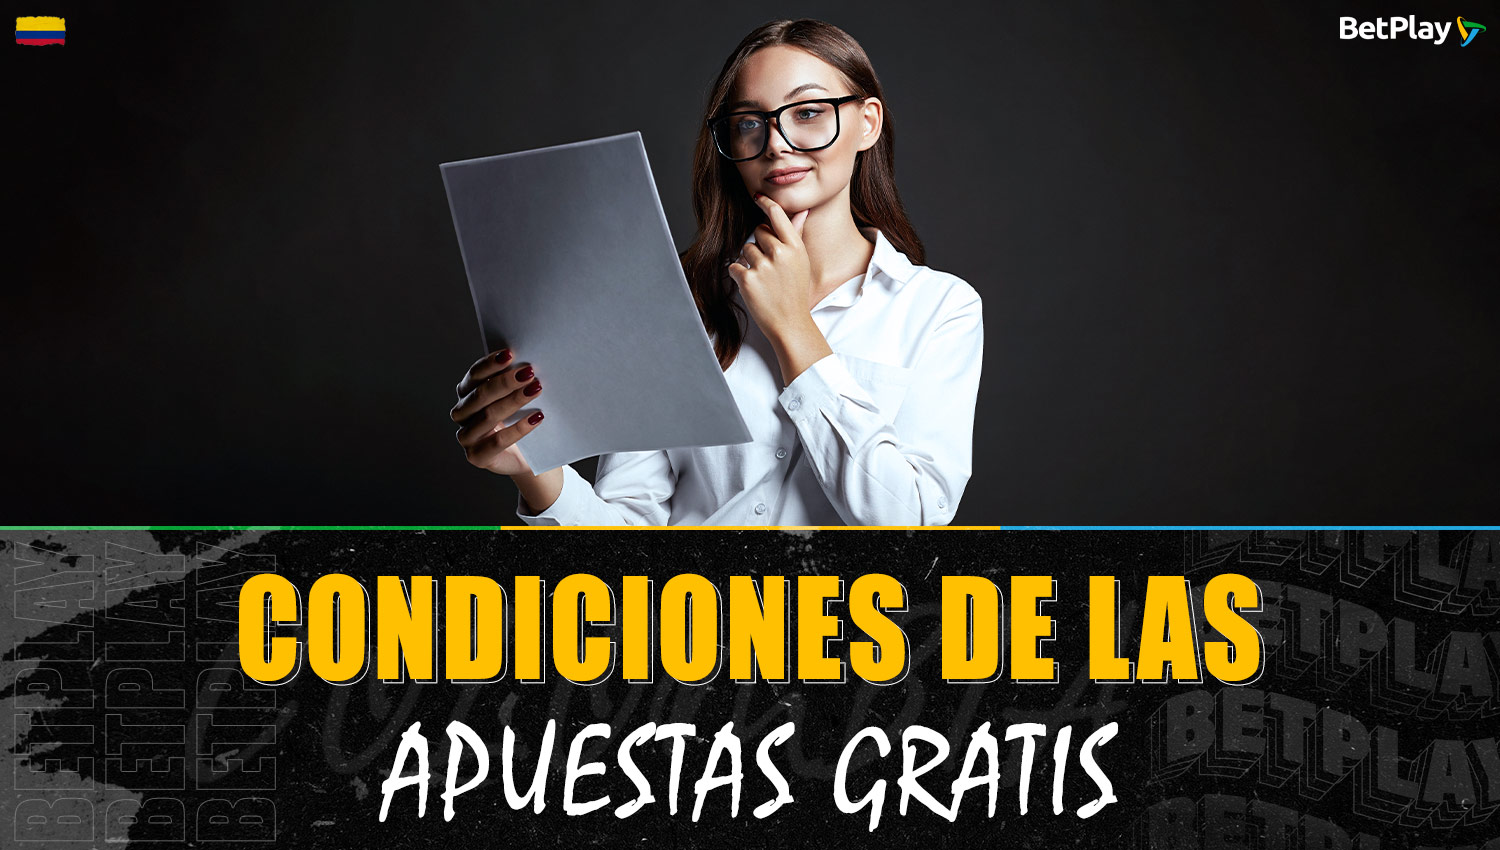 Condiciones de las apuestas gratuitas en la plataforma Betplay para jugadores colombianos